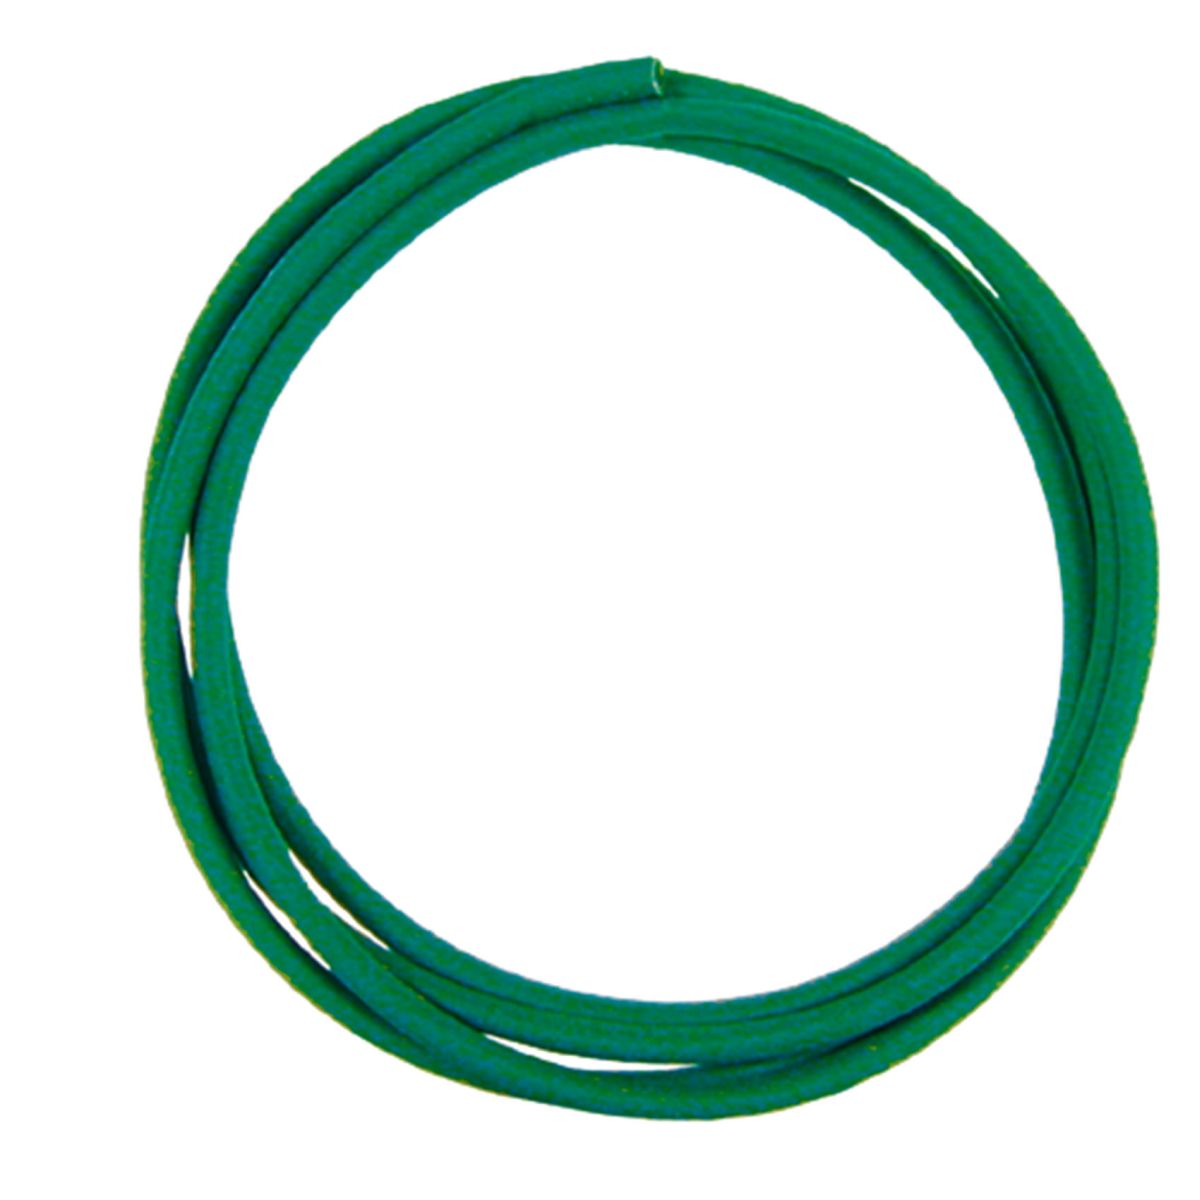 Viessmann 6817 - Schrumpfschlauch D=1,2mm, grün, 40 cm